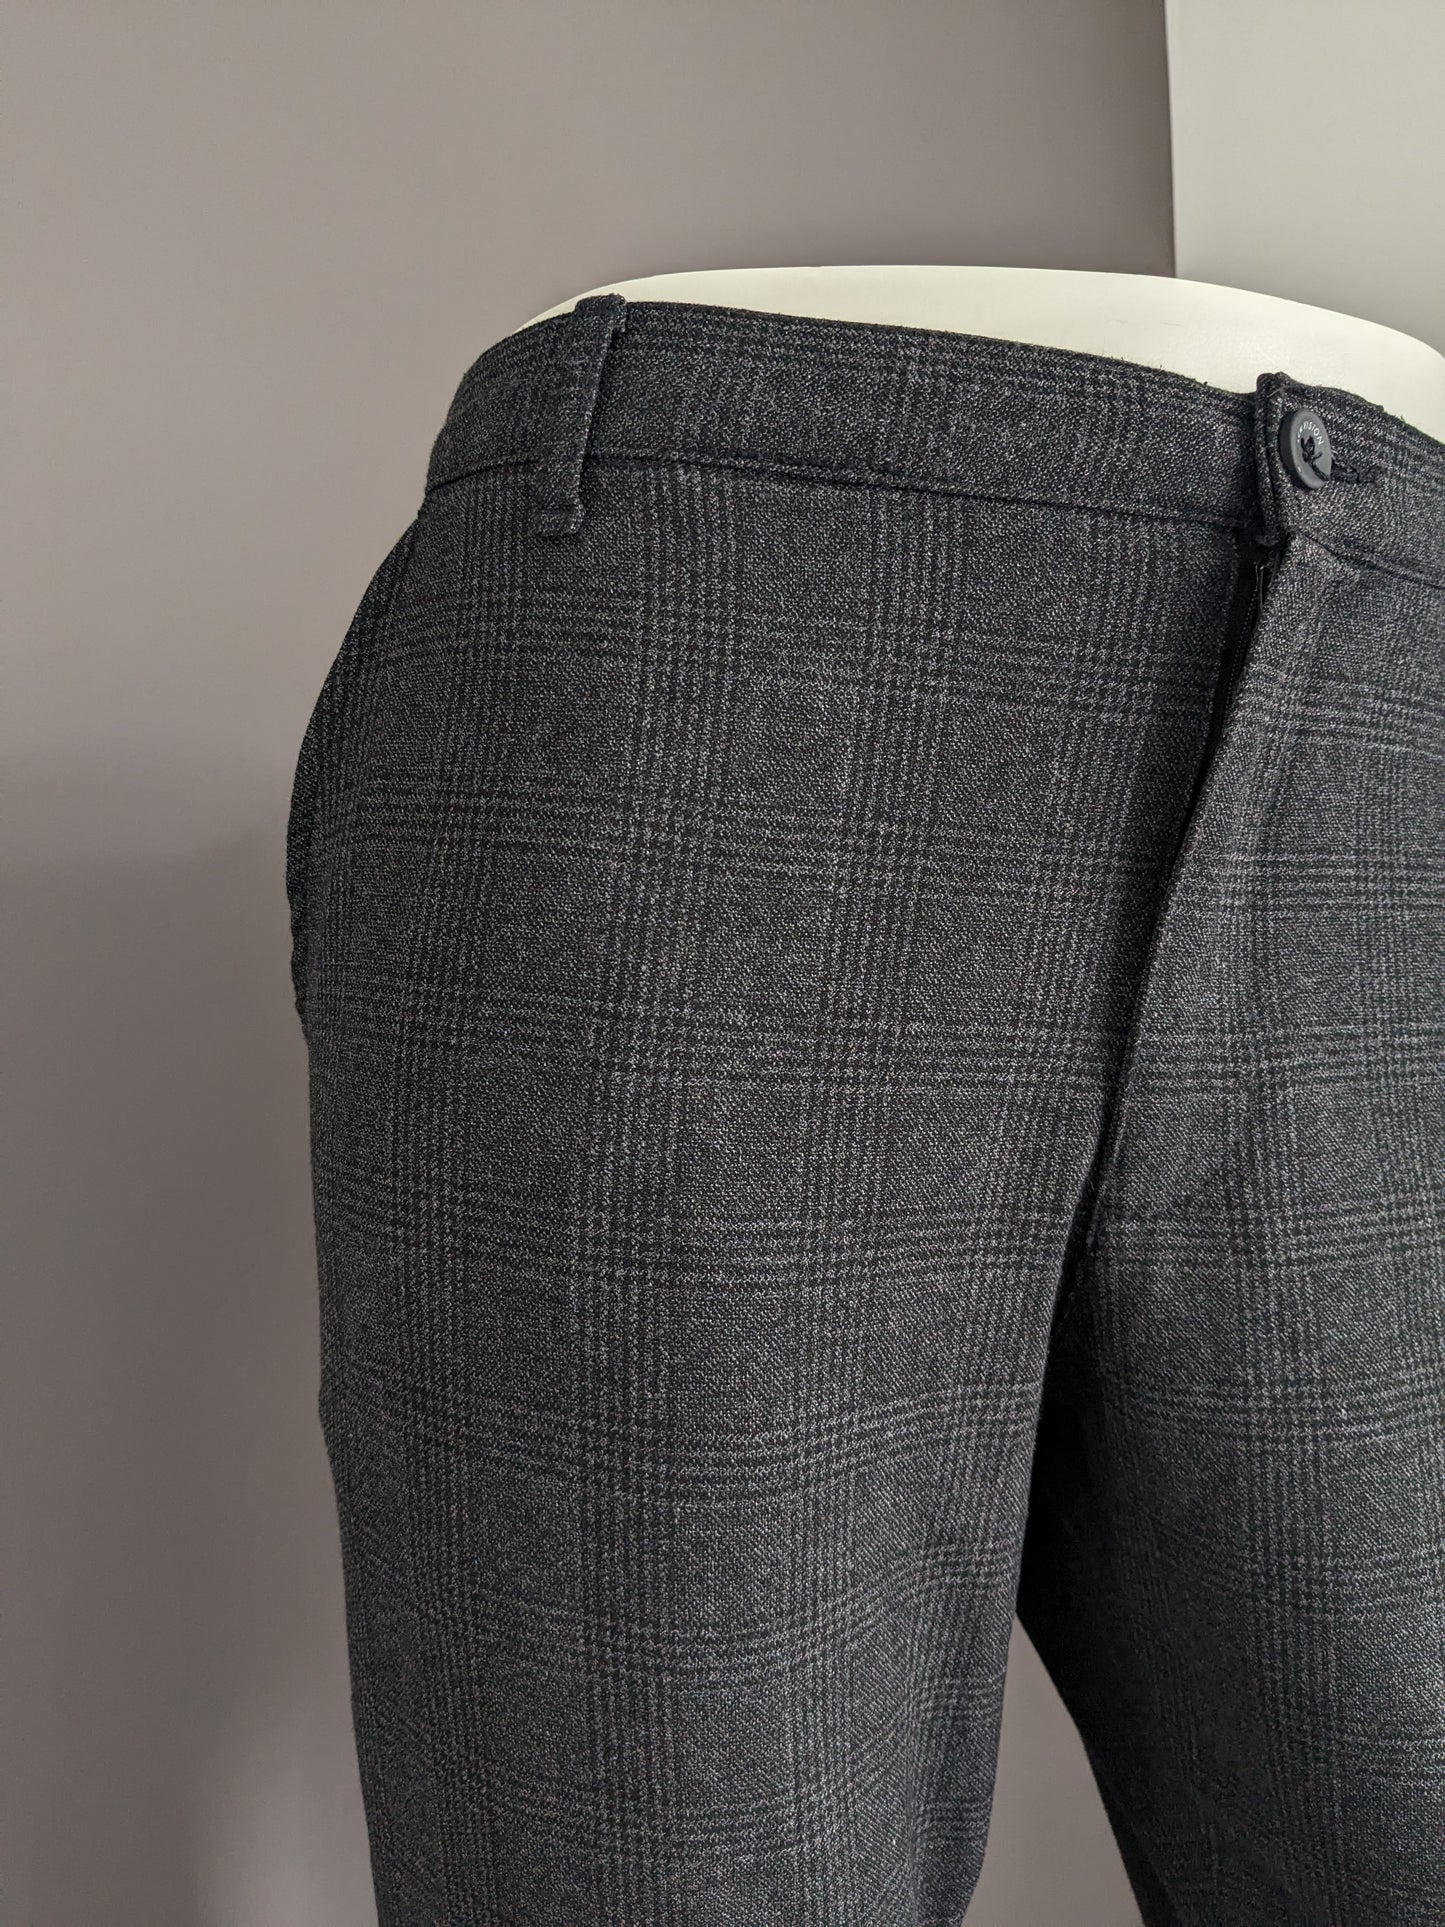 Pantalon / pantalon de vision LCW. Black gris vérifié. Slim Fit recadré. W36 - L30.